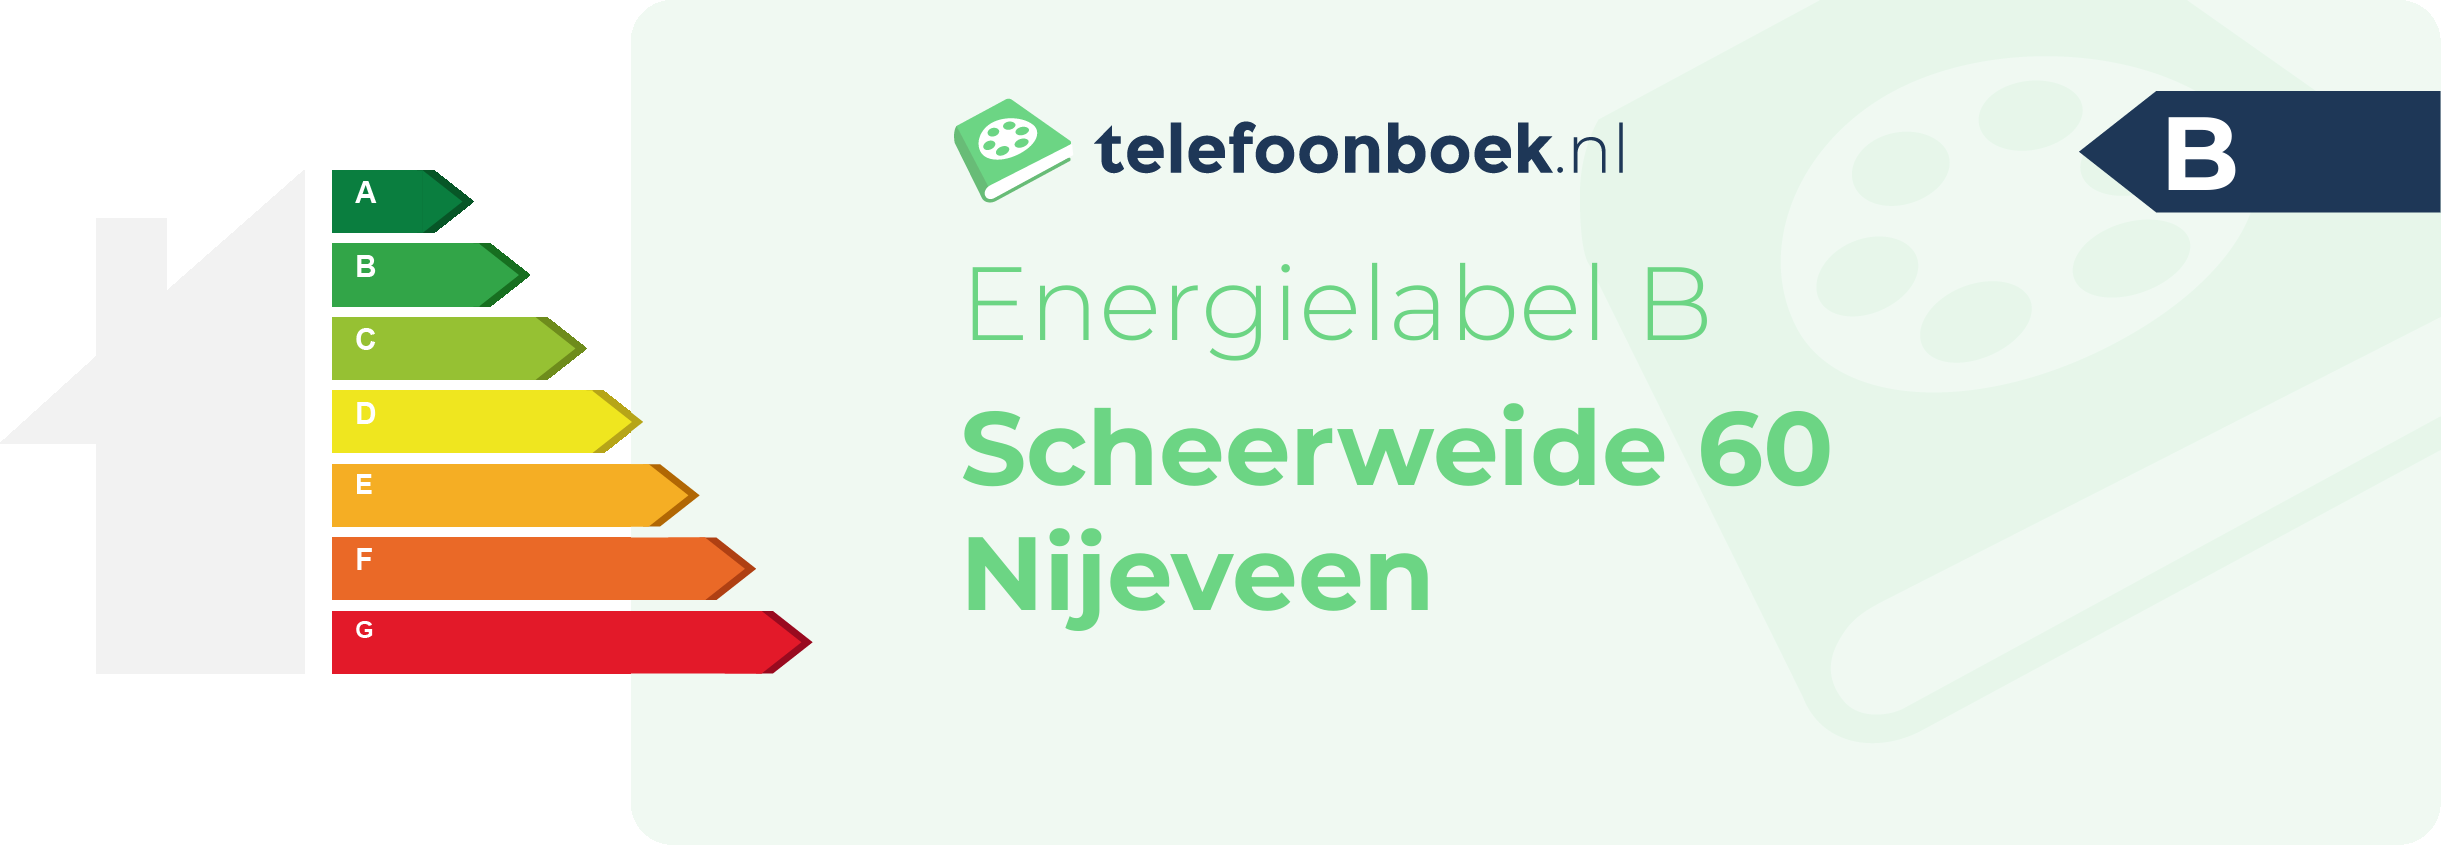 Energielabel Scheerweide 60 Nijeveen